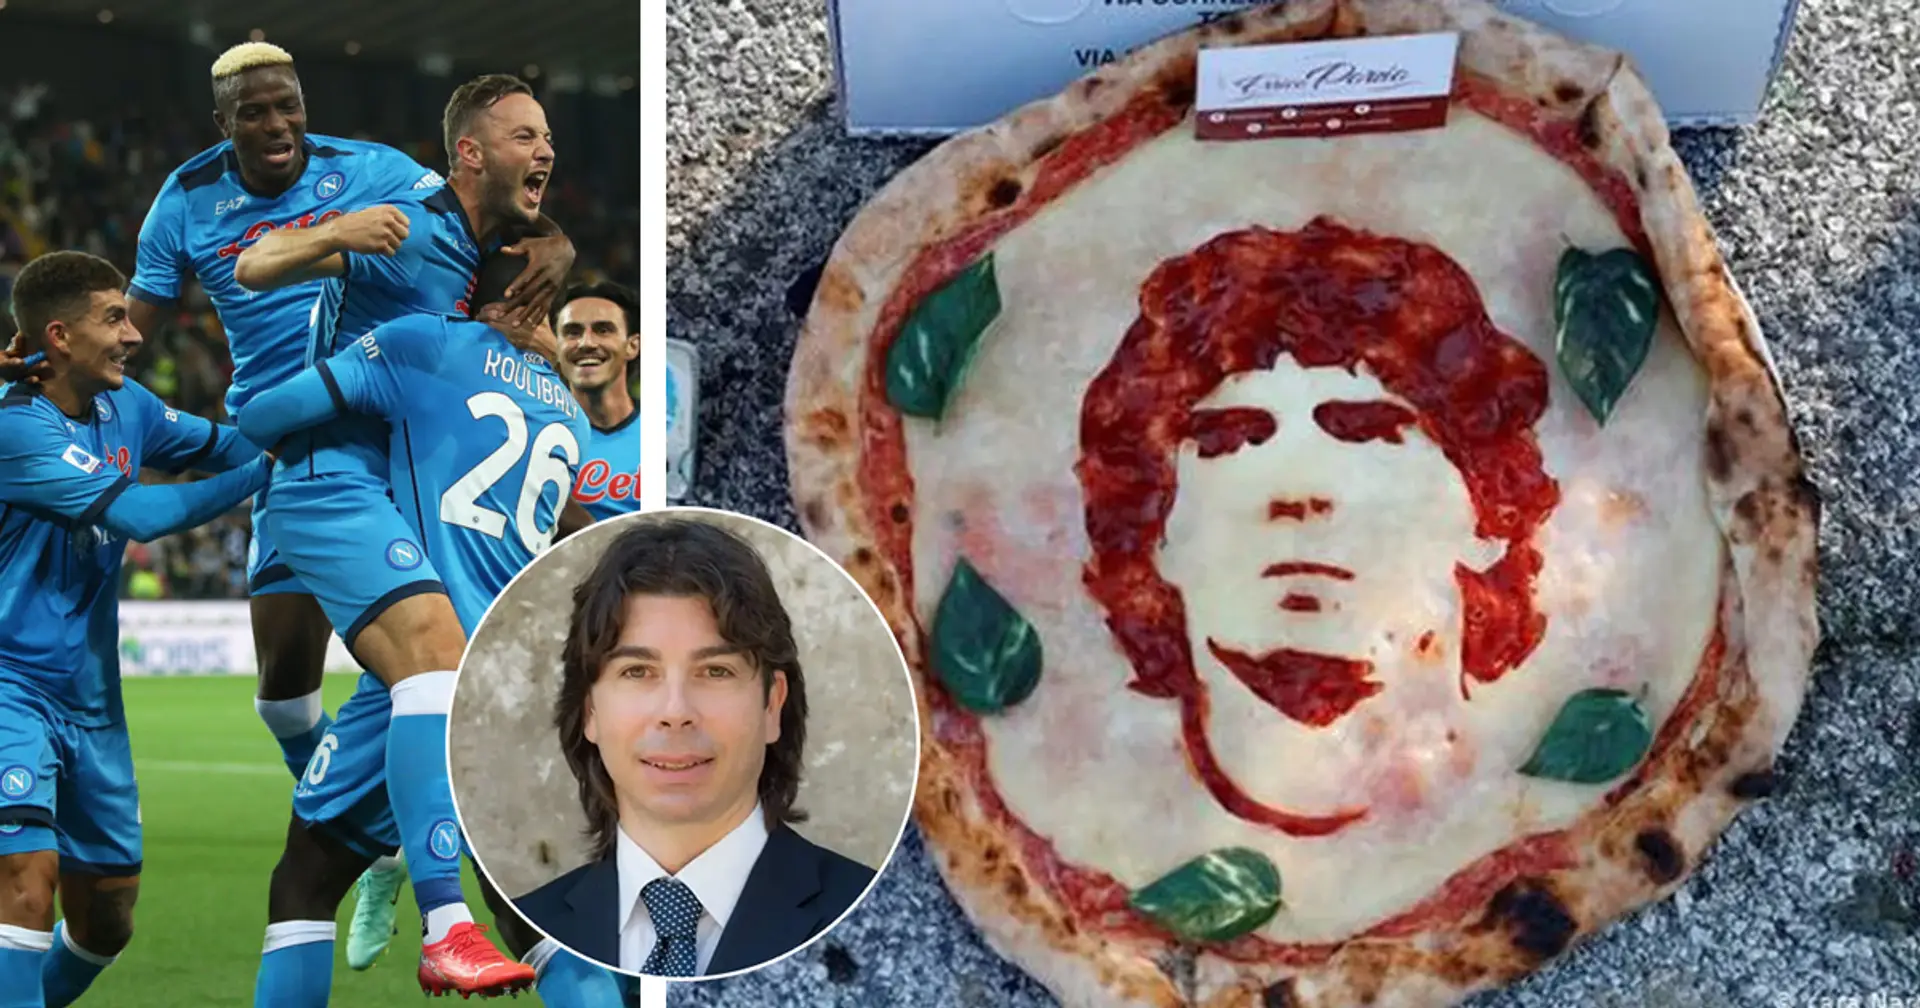 Neapel-Ernährungsberater: Pizza ist für unsere Spieler nicht verboten